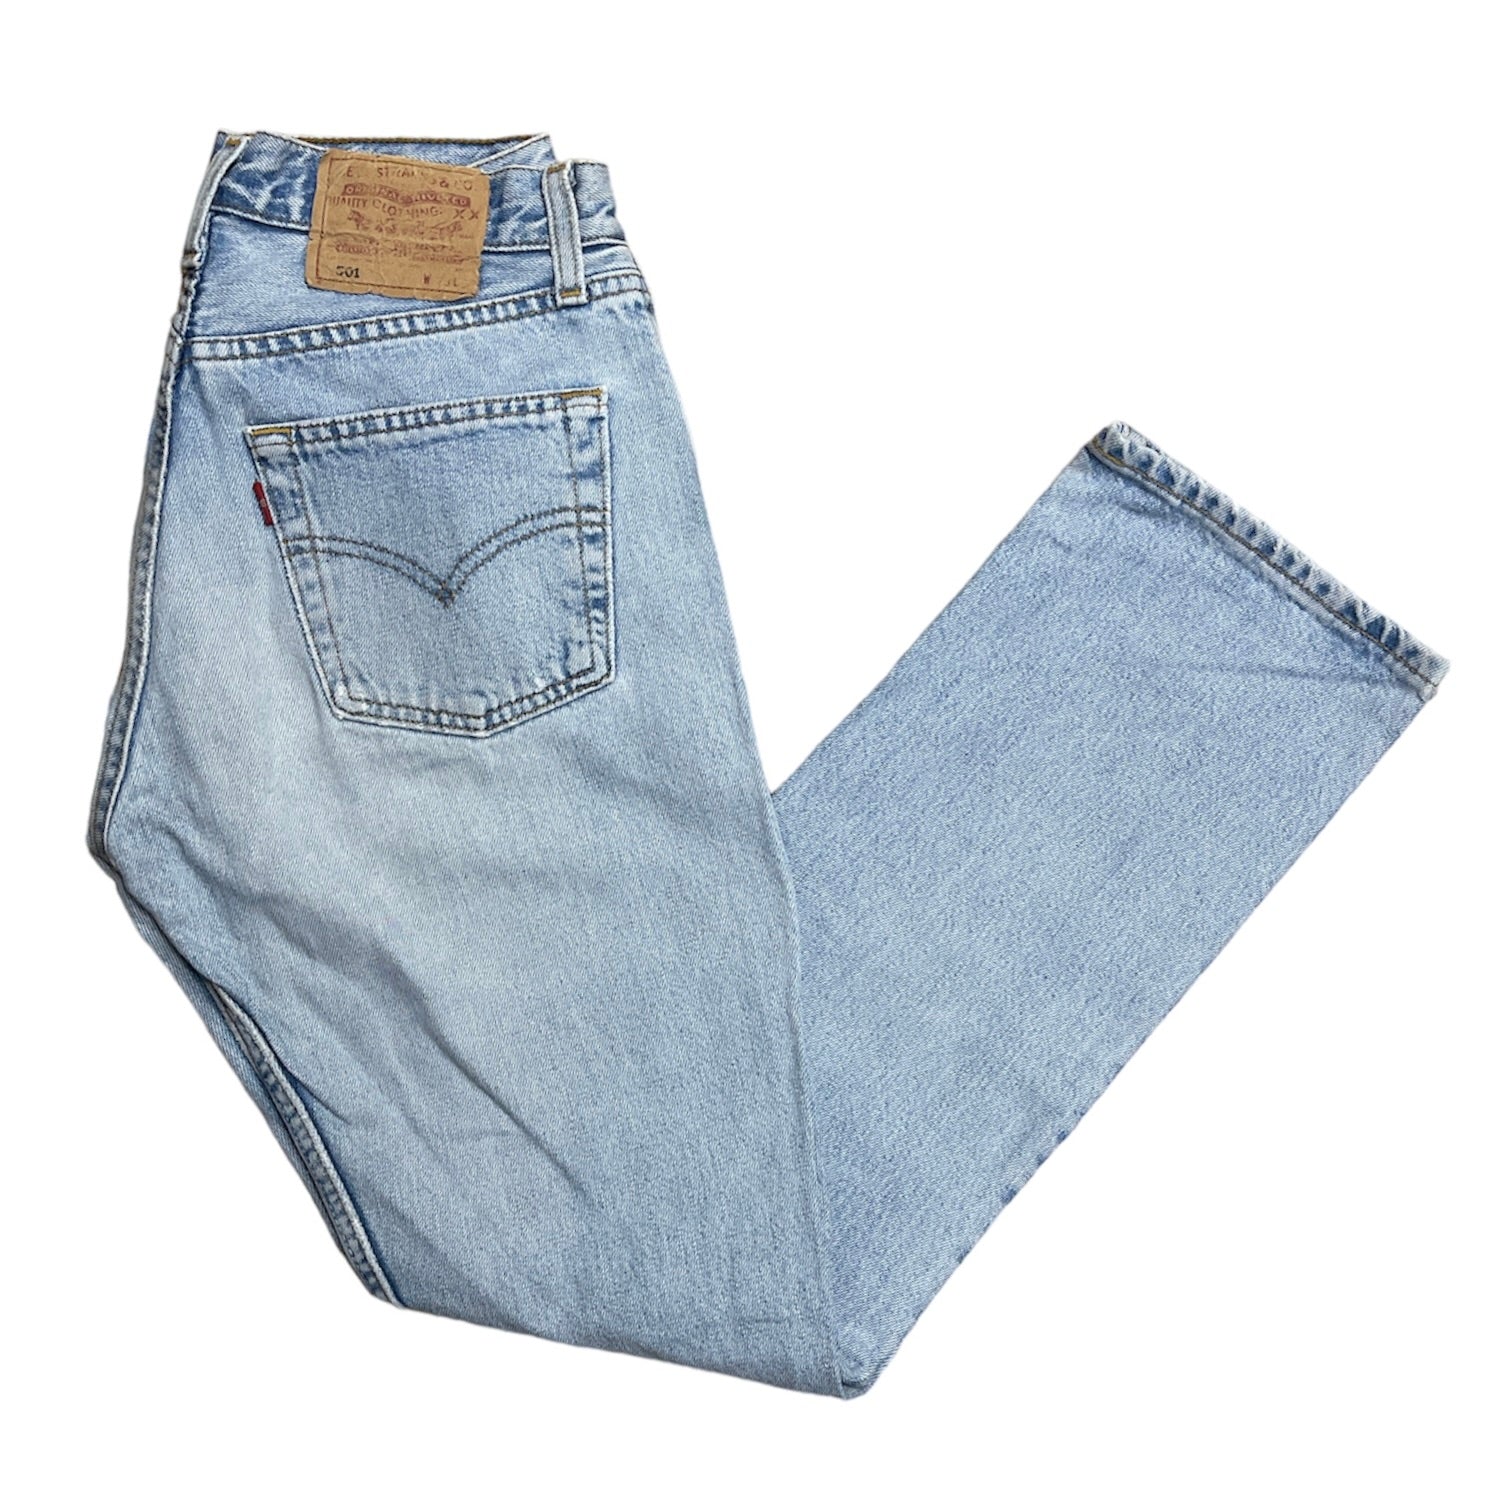 Vintage Levis 501 Light Blue Jeans (W28/L30)